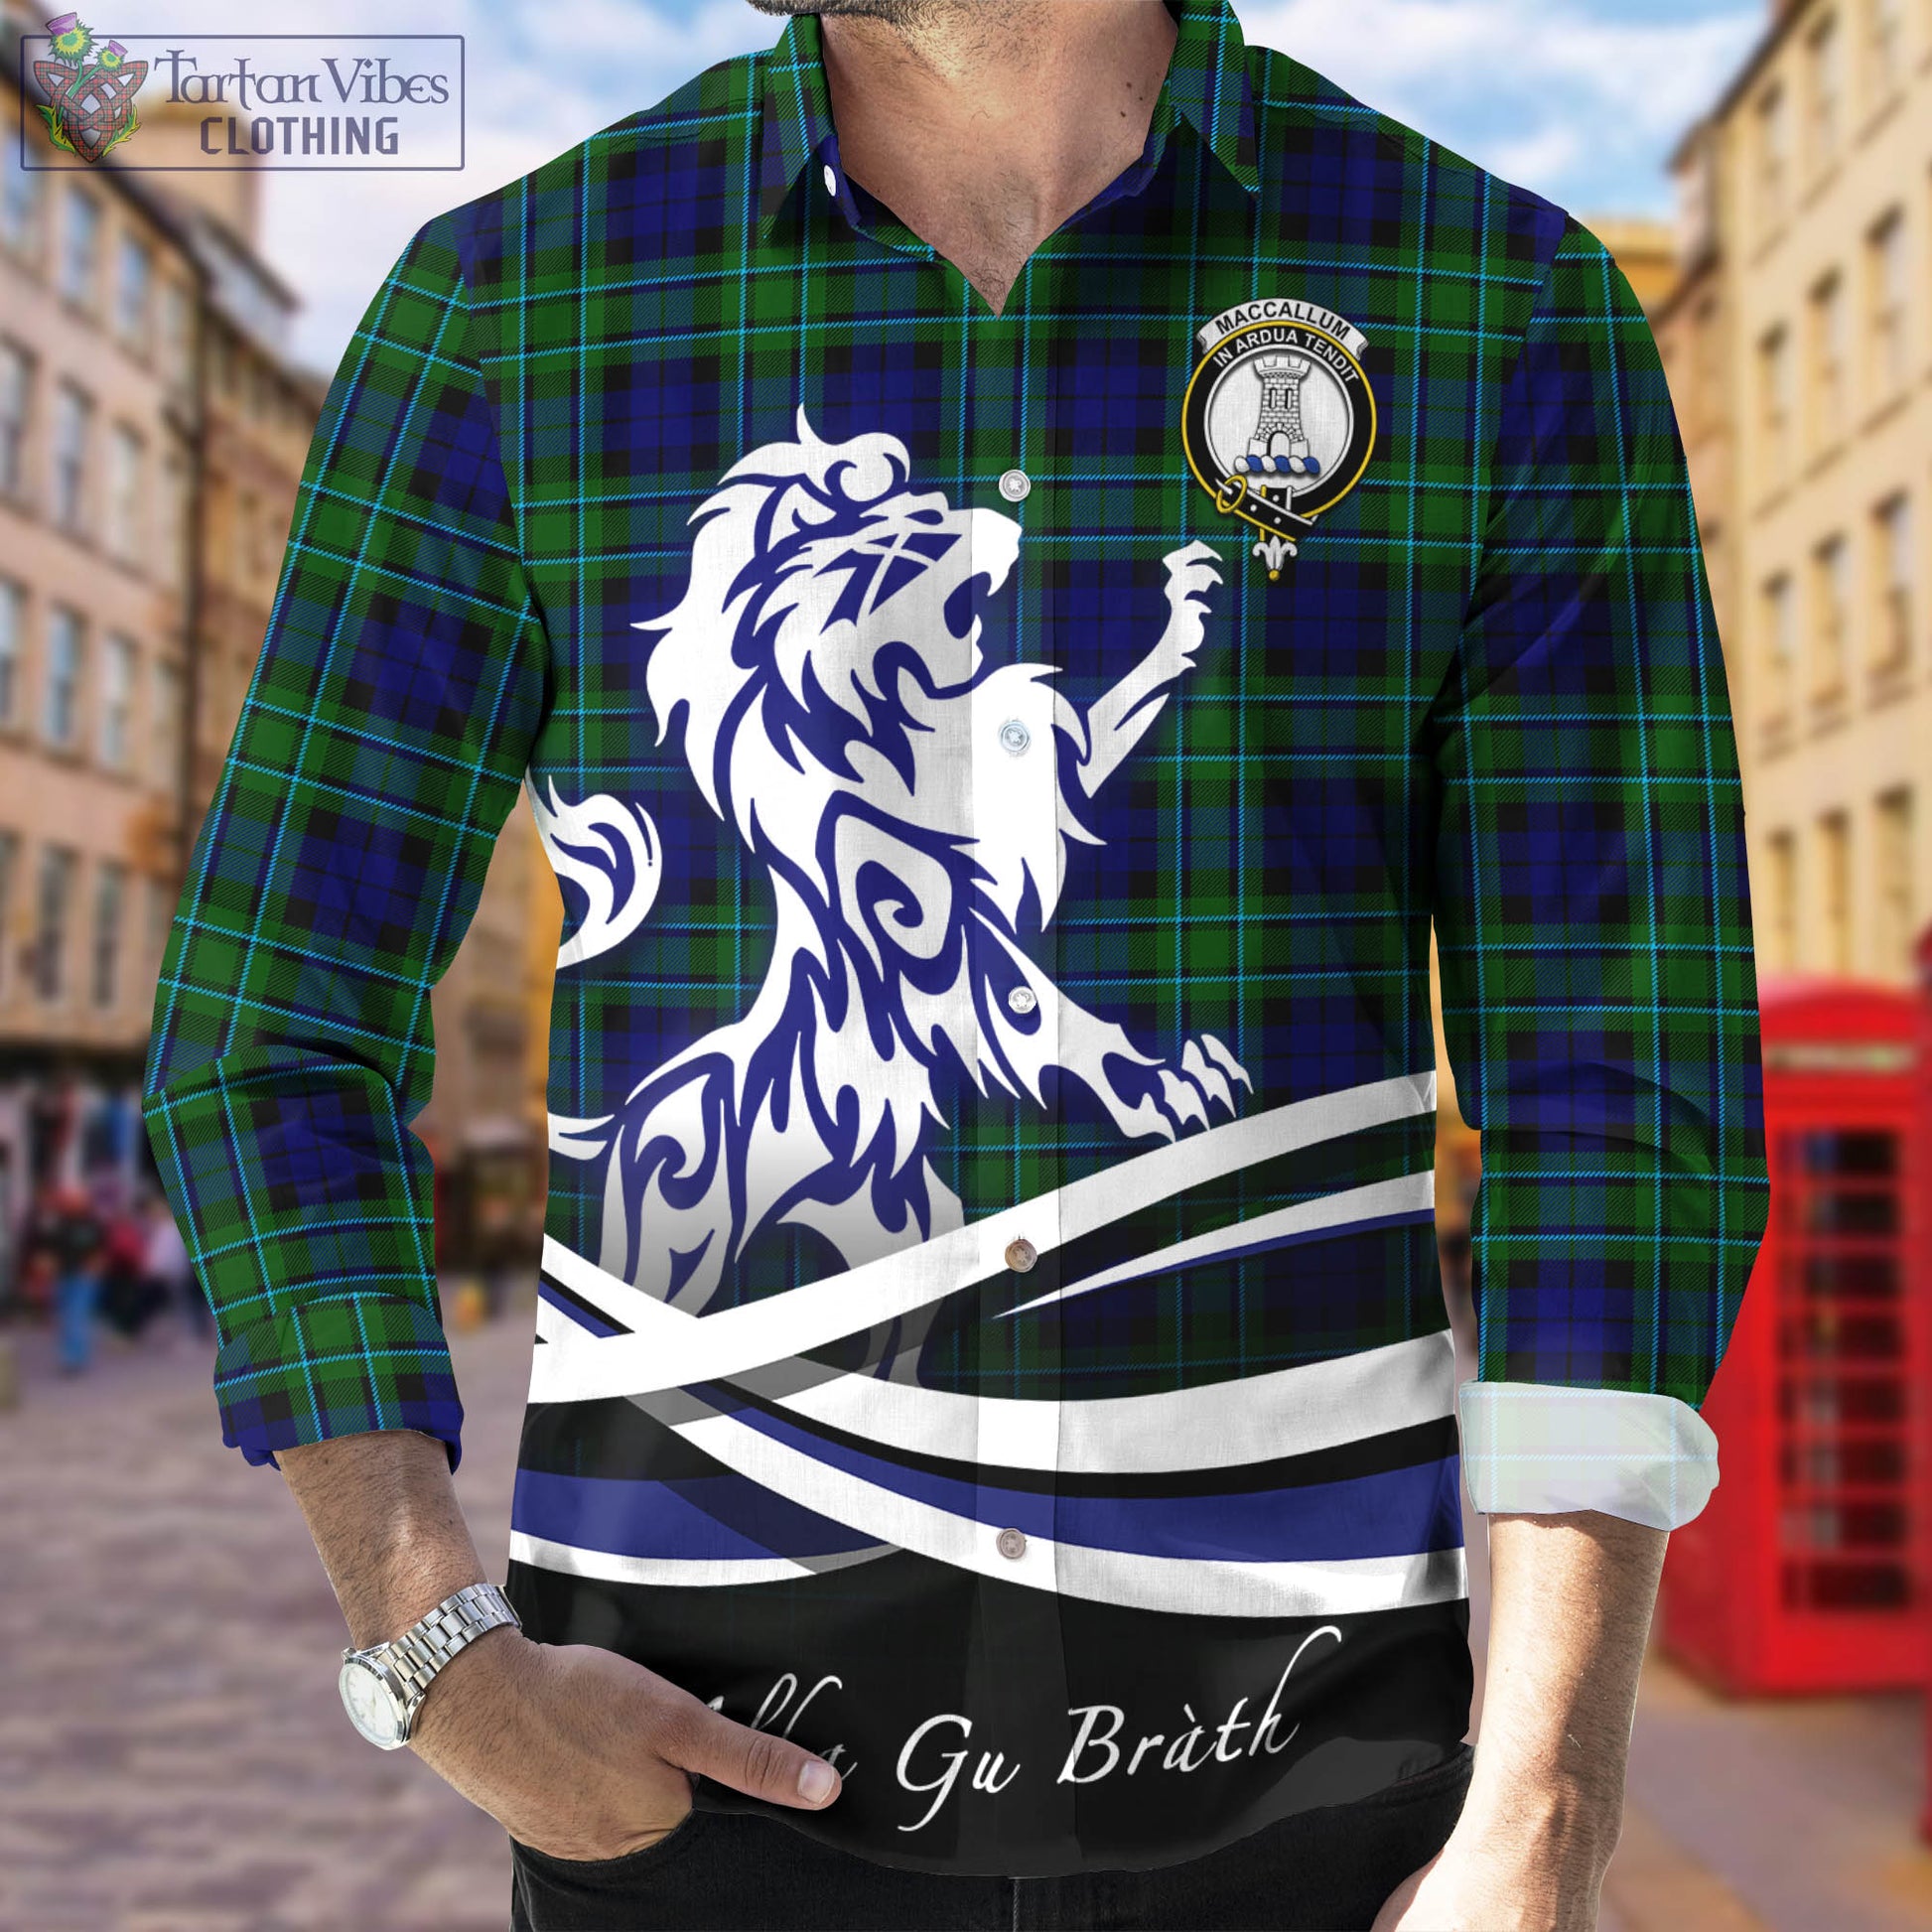 maccallum-modern-tartan-long-sleeve-button-up-shirt-with-alba-gu-brath-regal-lion-emblem